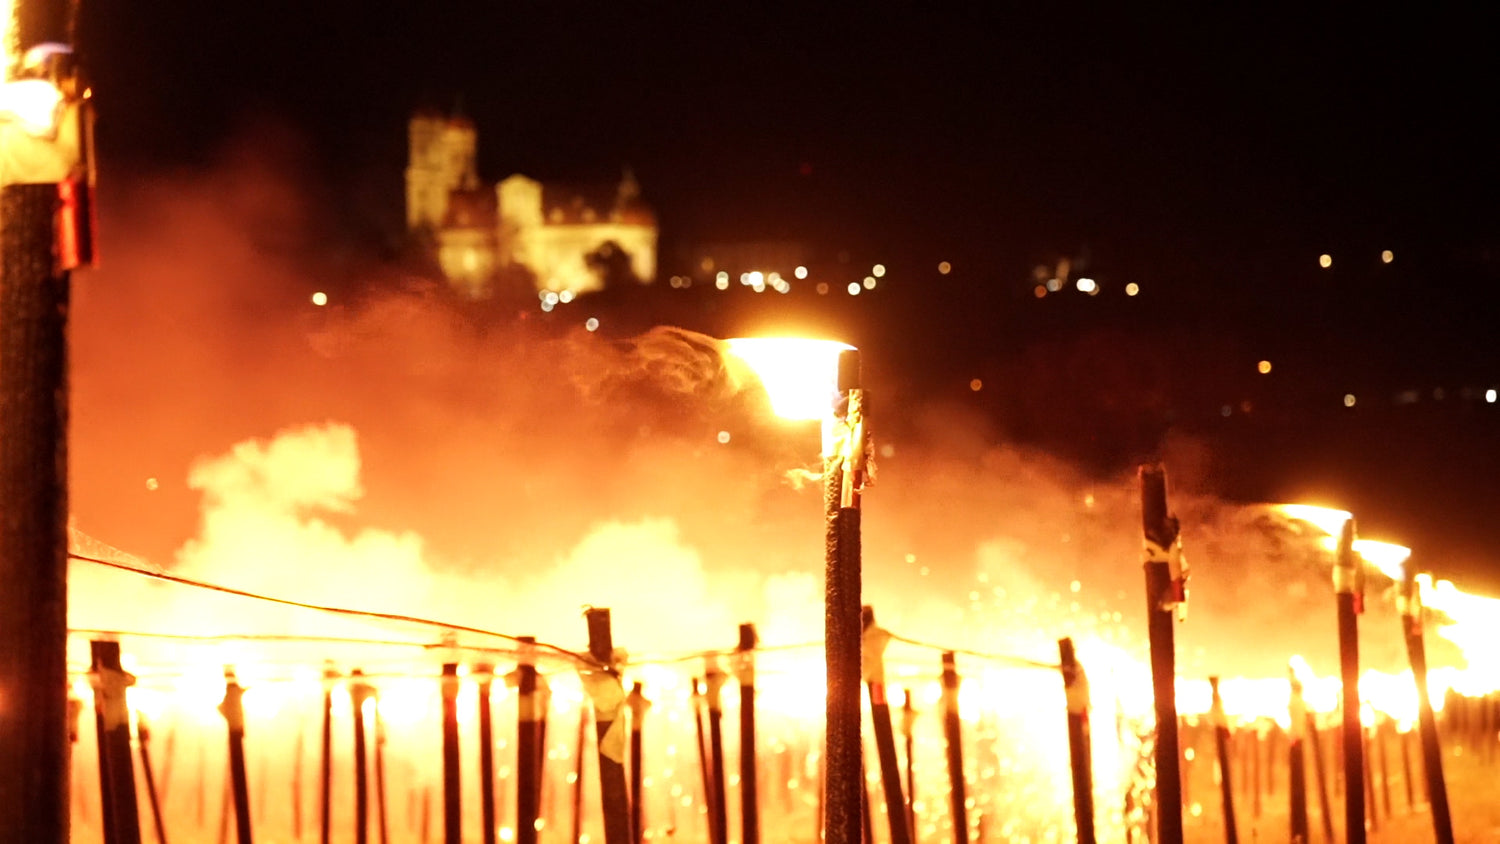 10.000 Fackeln brenne beim Weltrekord, dahinter ist die Silhouette des Schloss Ellwangen zu erkennen